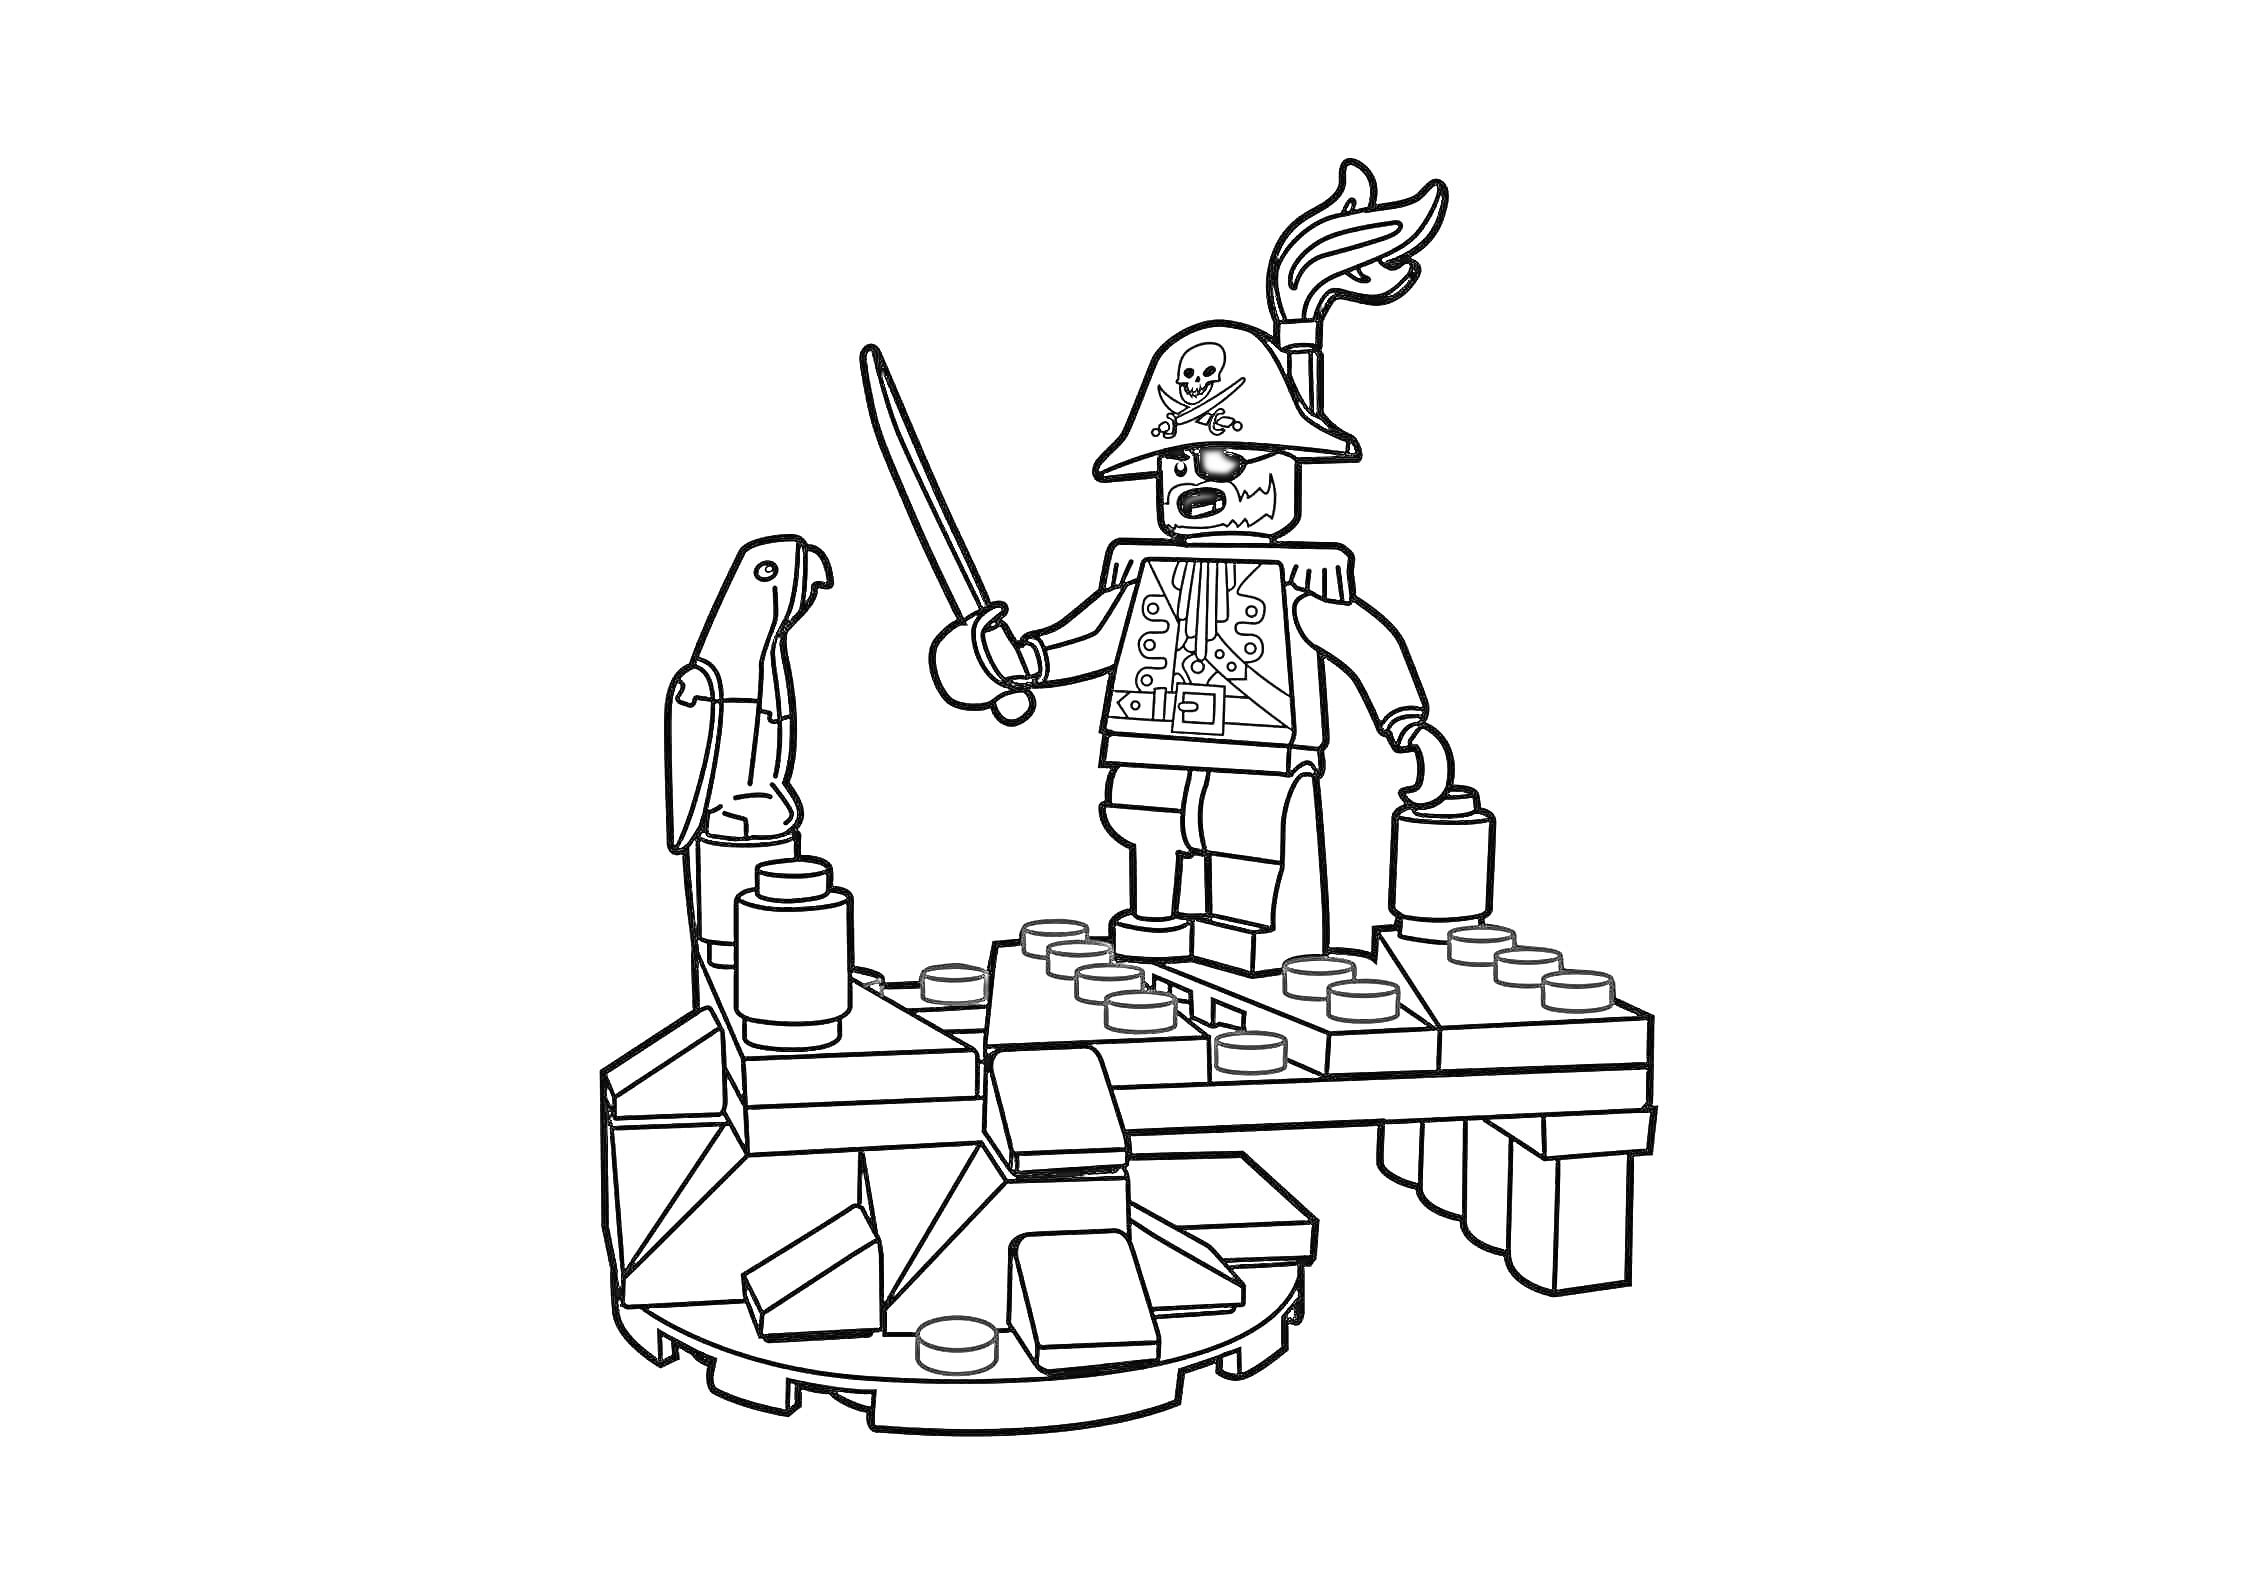 Пират Лего с попугаем, мечом и сундуком на деревянной платформе